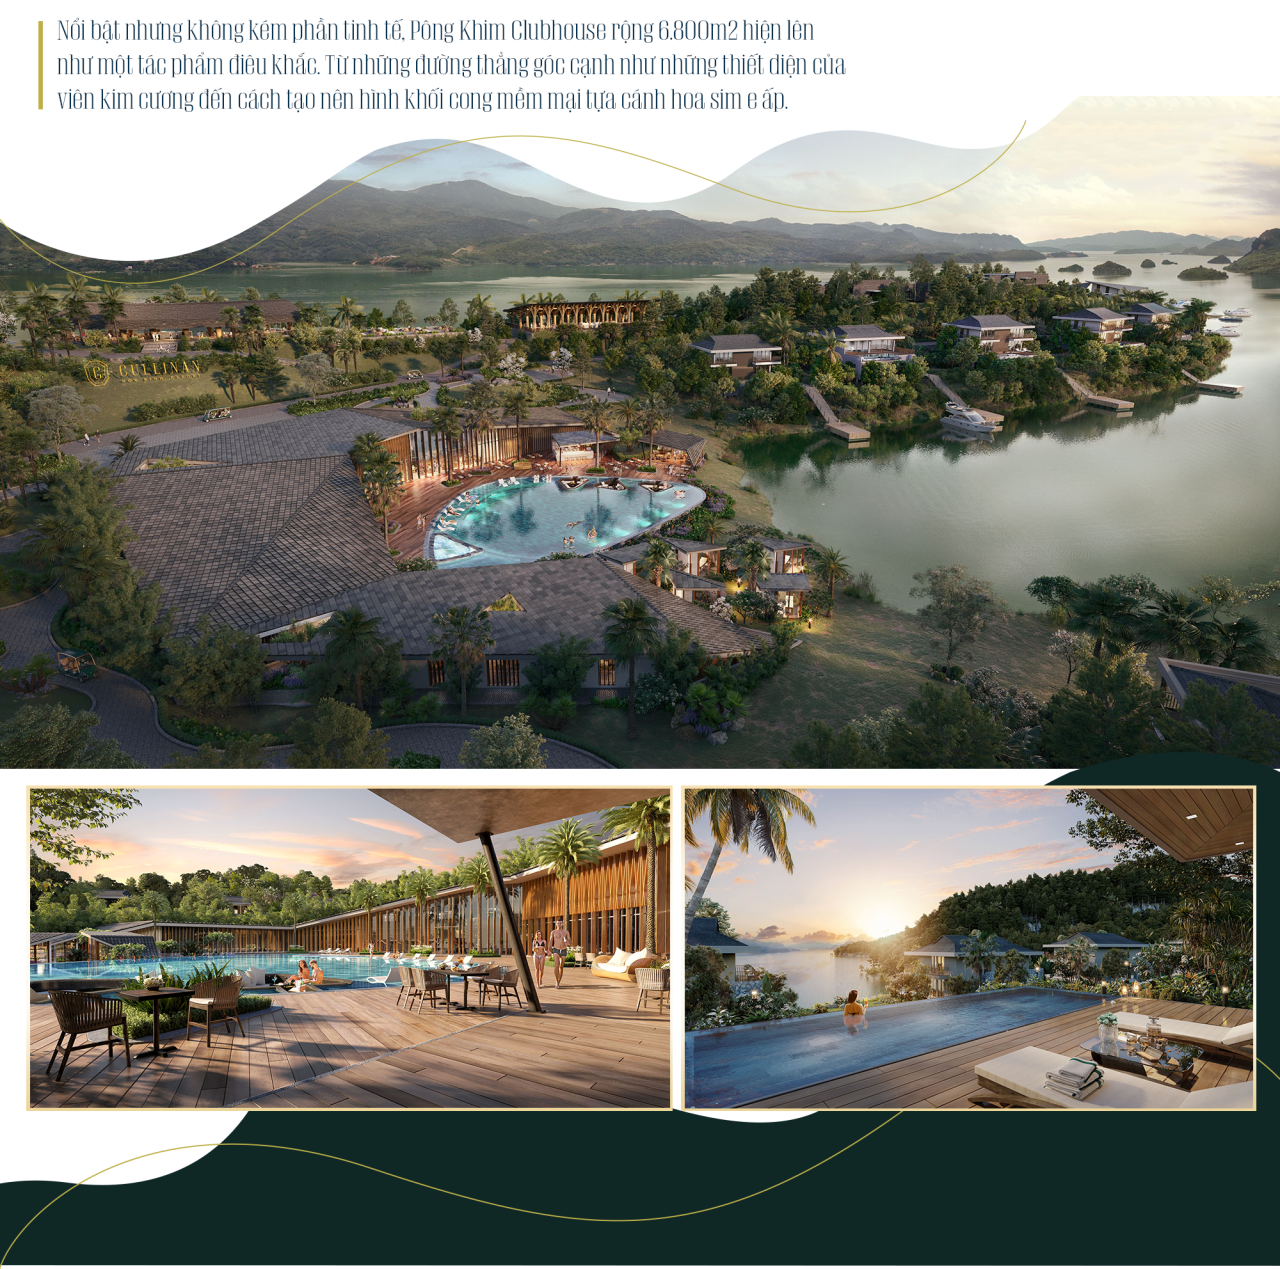 Cullinan Hòa Bình Resort: Chinh phục BĐS nghỉ dưỡng đảo hồ với loạt tiện ích thượng lưu - Ảnh 4.